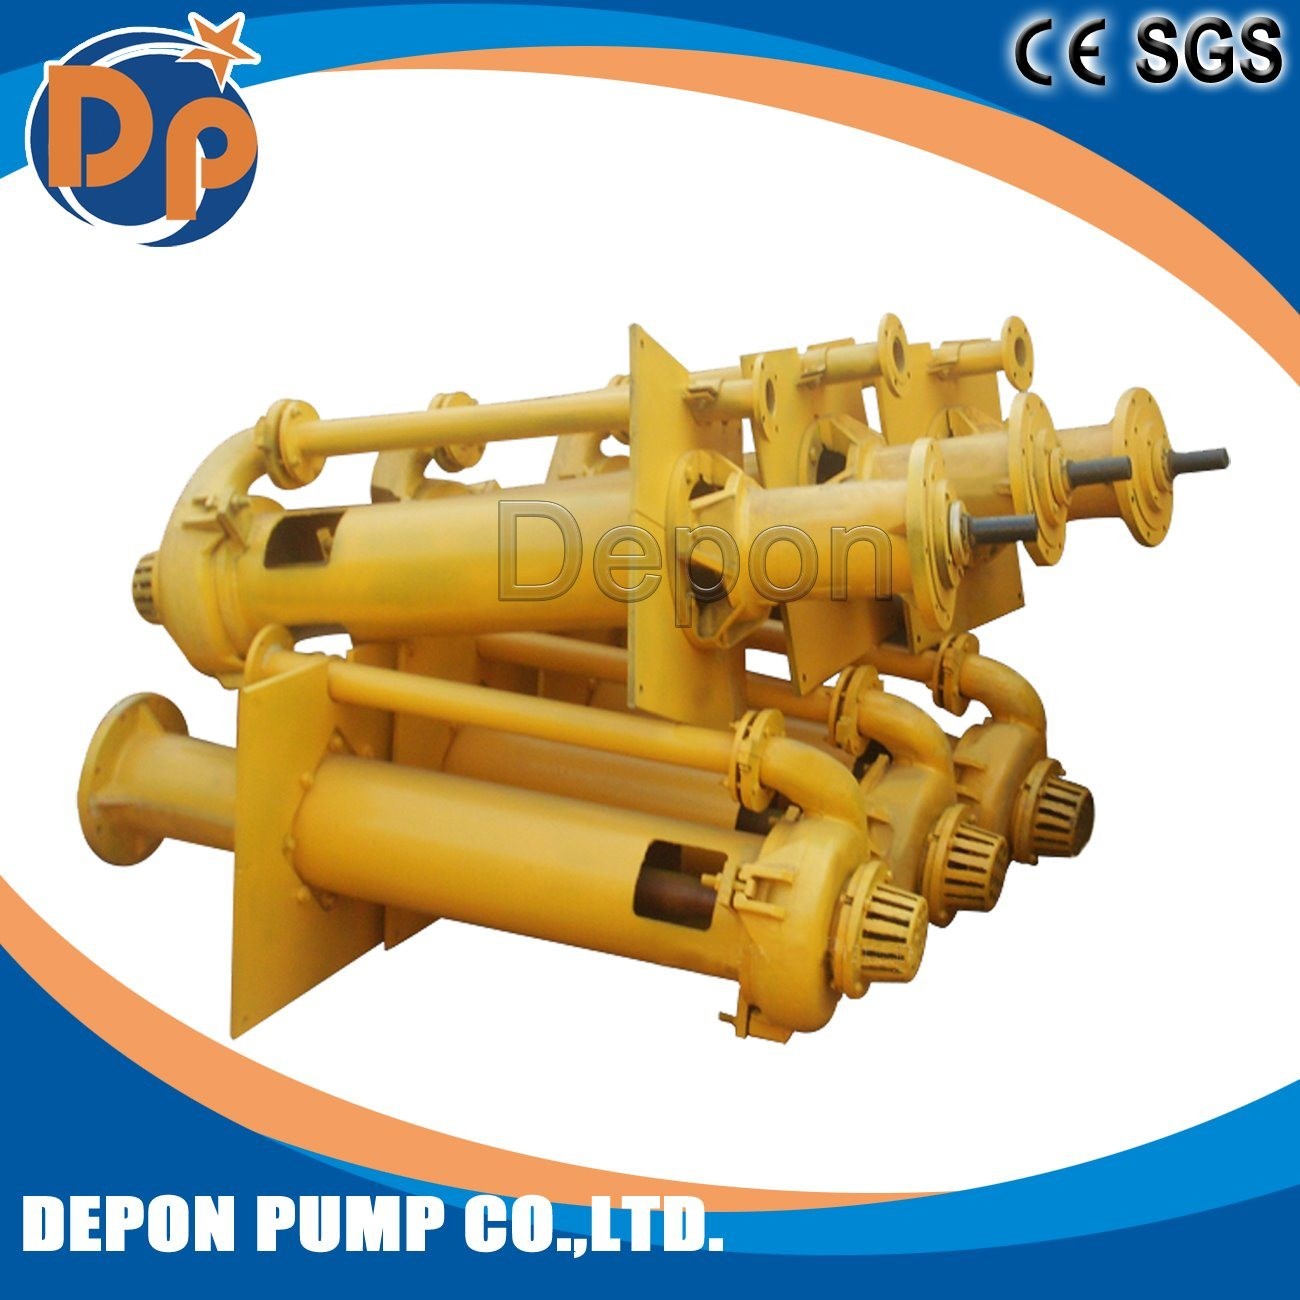 High Pressure Electric Dewatering Pressure and Mining, Mud Slurry Pump Usage Vertical Slurry Pump